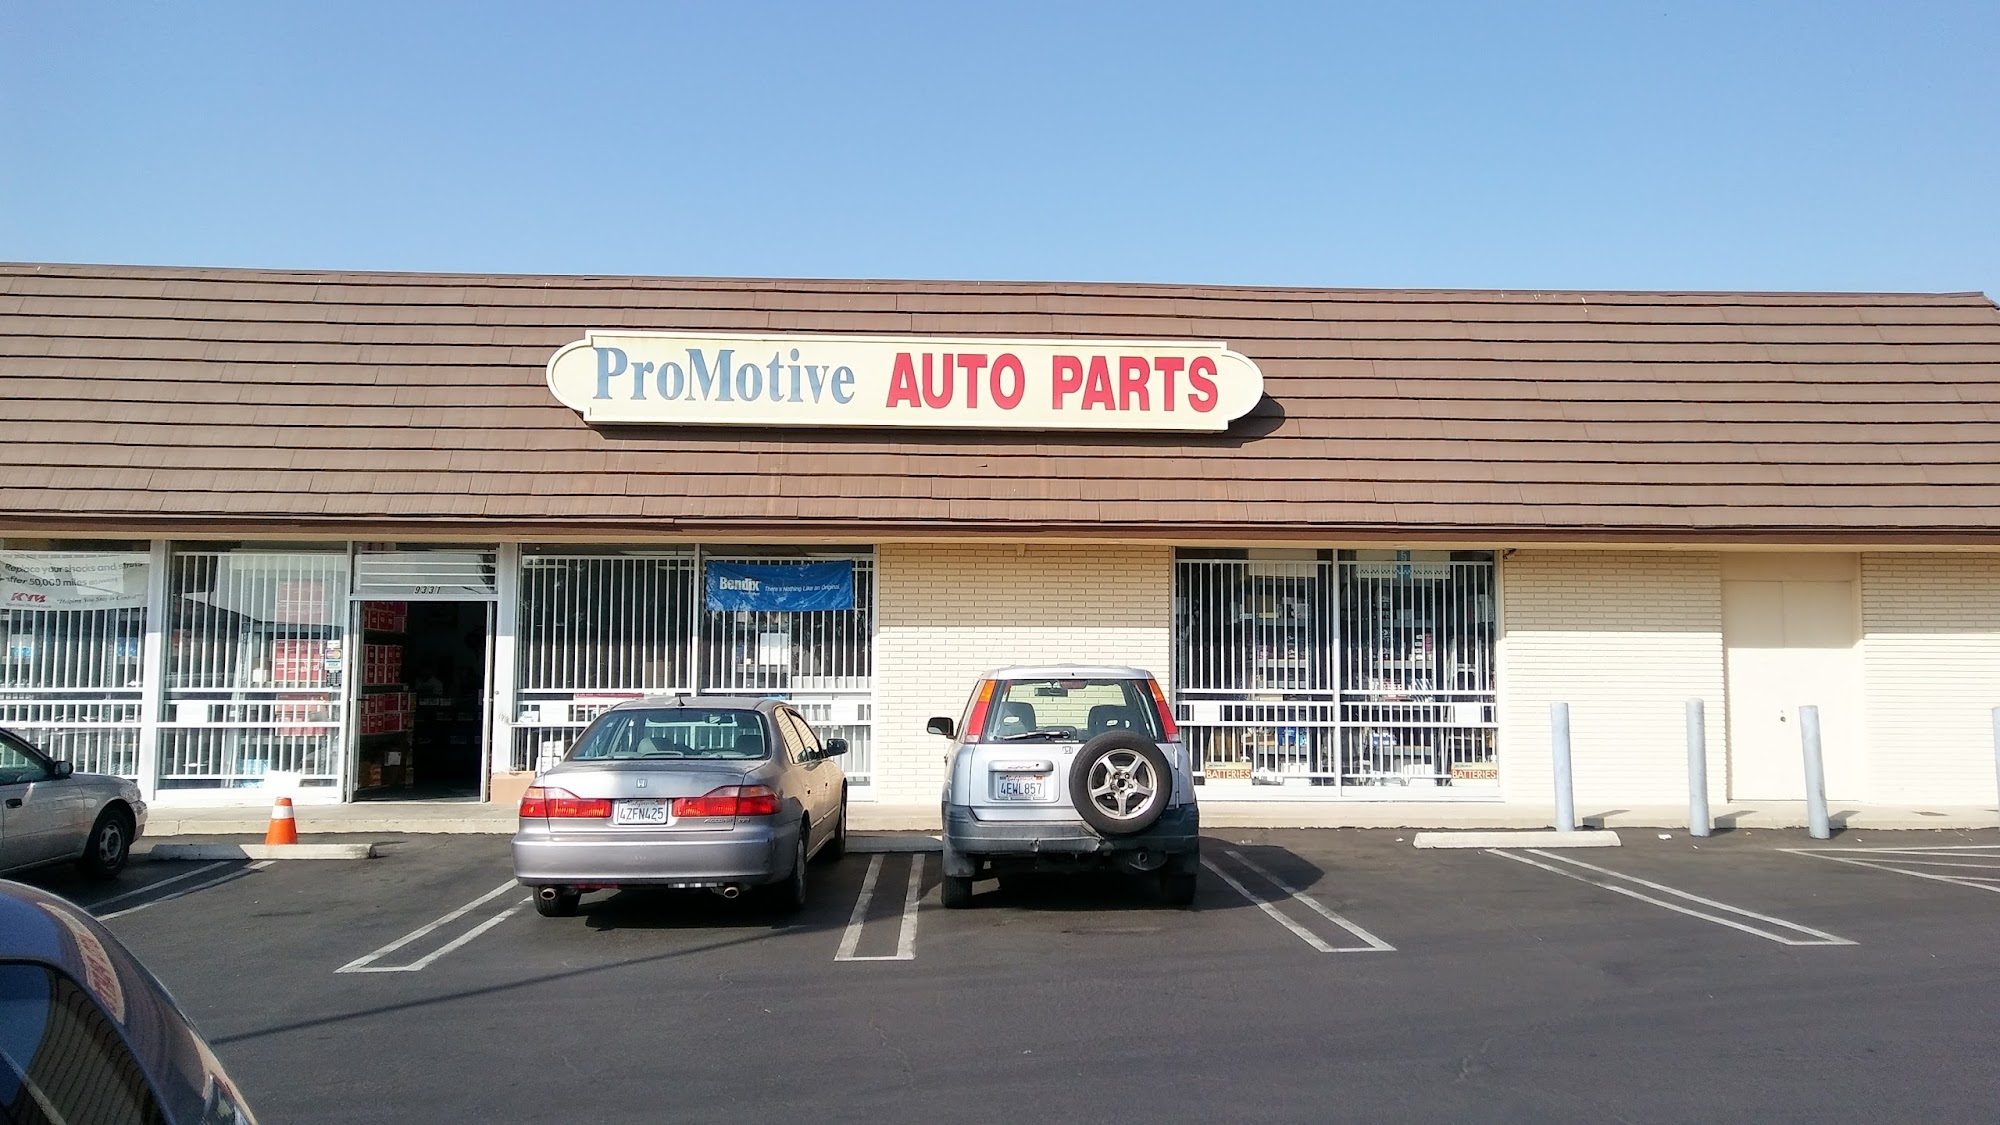 ProMotive Auto Parts